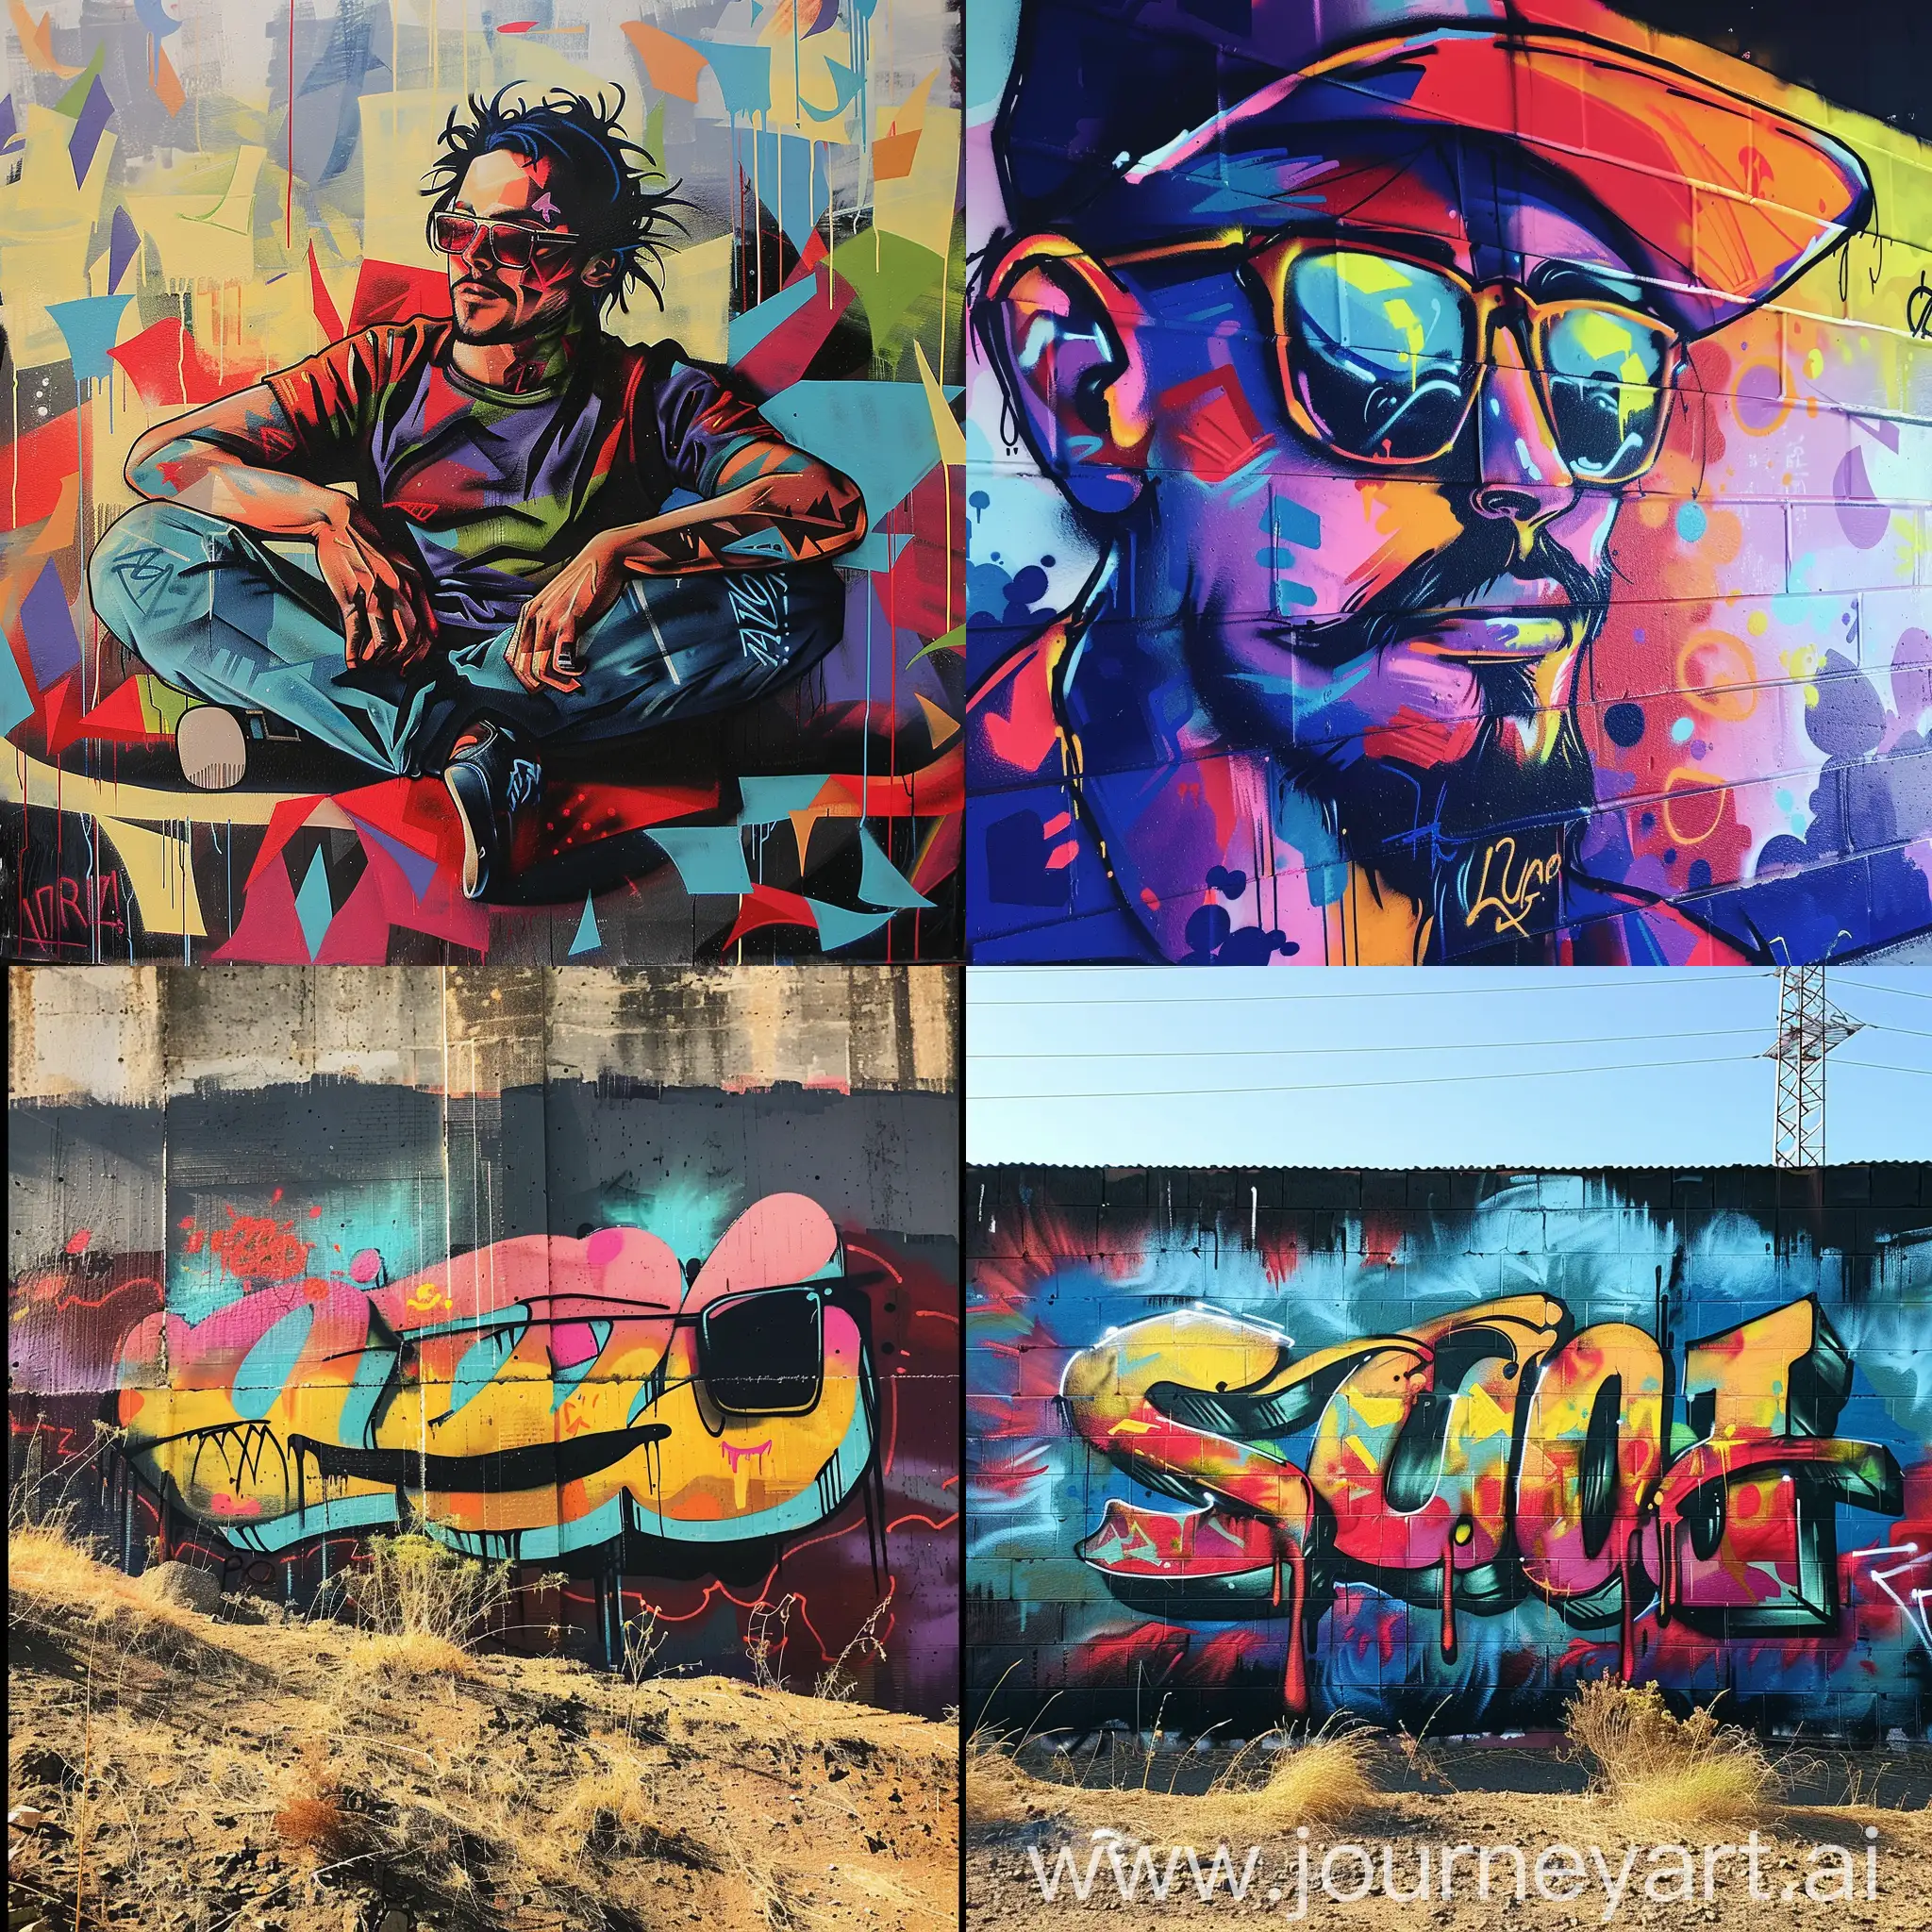 Urban-Graffiti-Chill-Scene-with-Vibrant-Colors